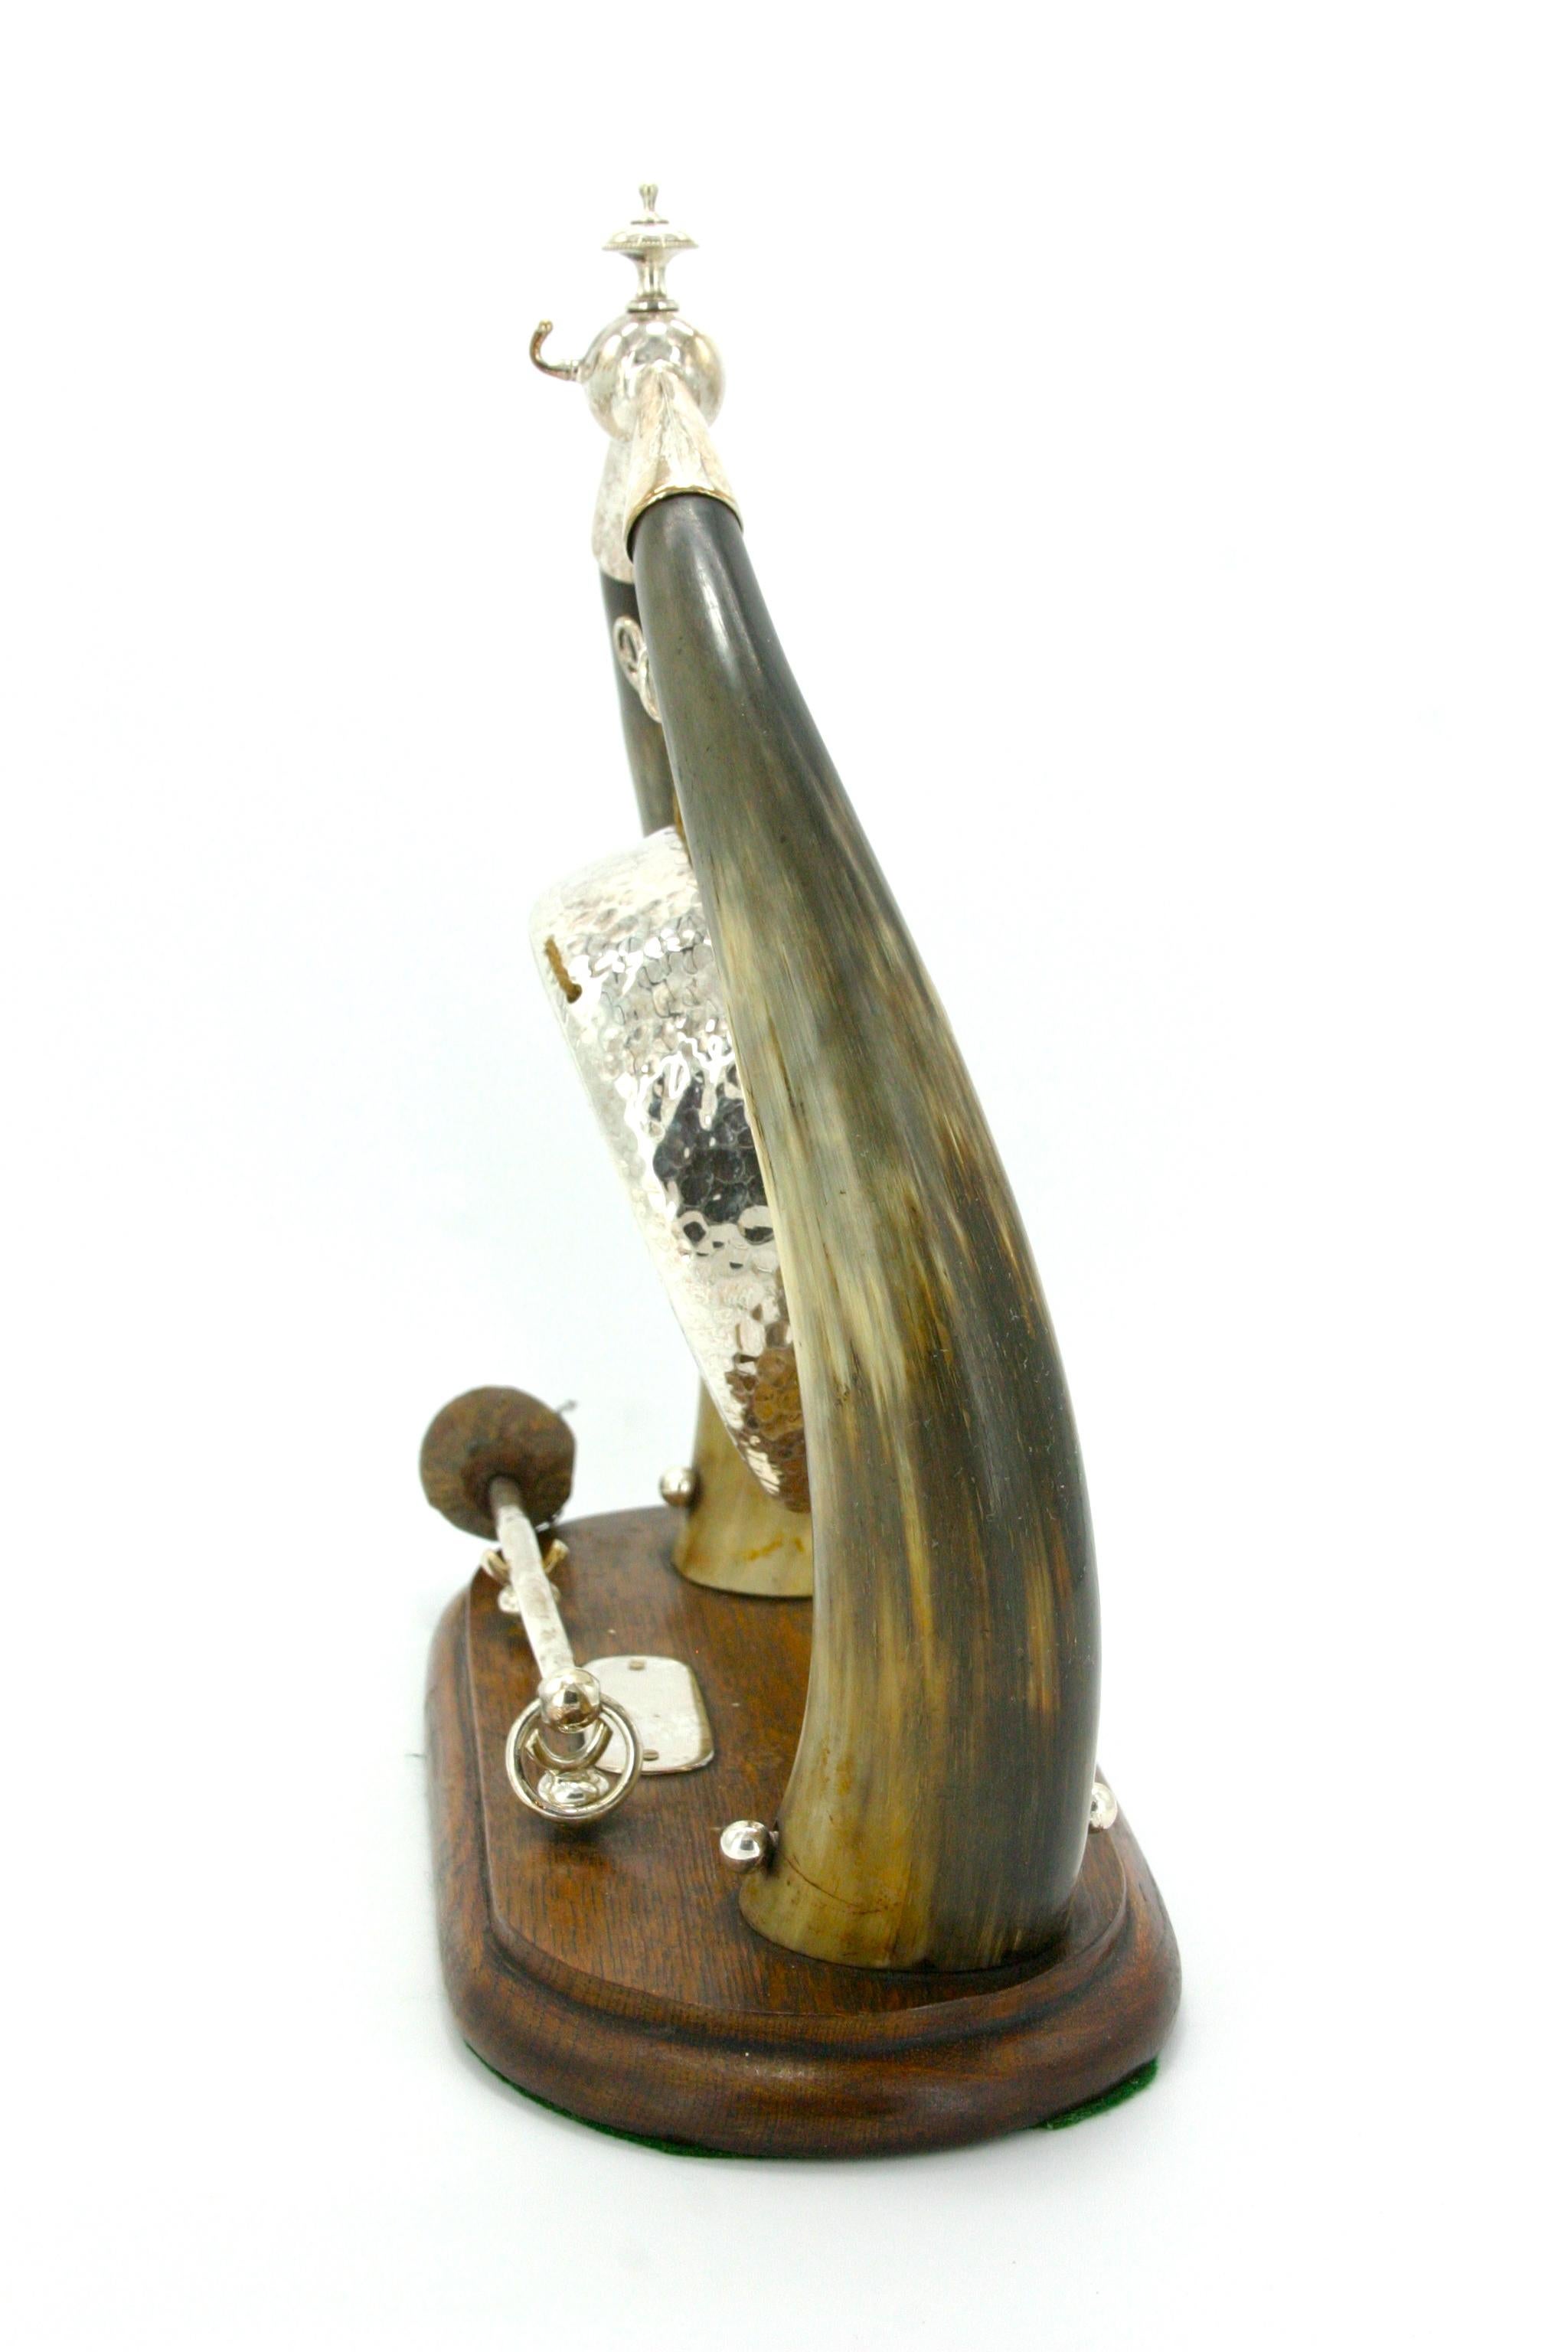 Großer englischer Tischgong aus Silber und Horn aus dem 19. Jahrhundert mit dem originalen Eichenholz-Schlagbrett und Sockel im viktorianischen Stil. Dieser feine Tafelgong hat einen schönen weichen Ton und ein schönes Horn-Design mit